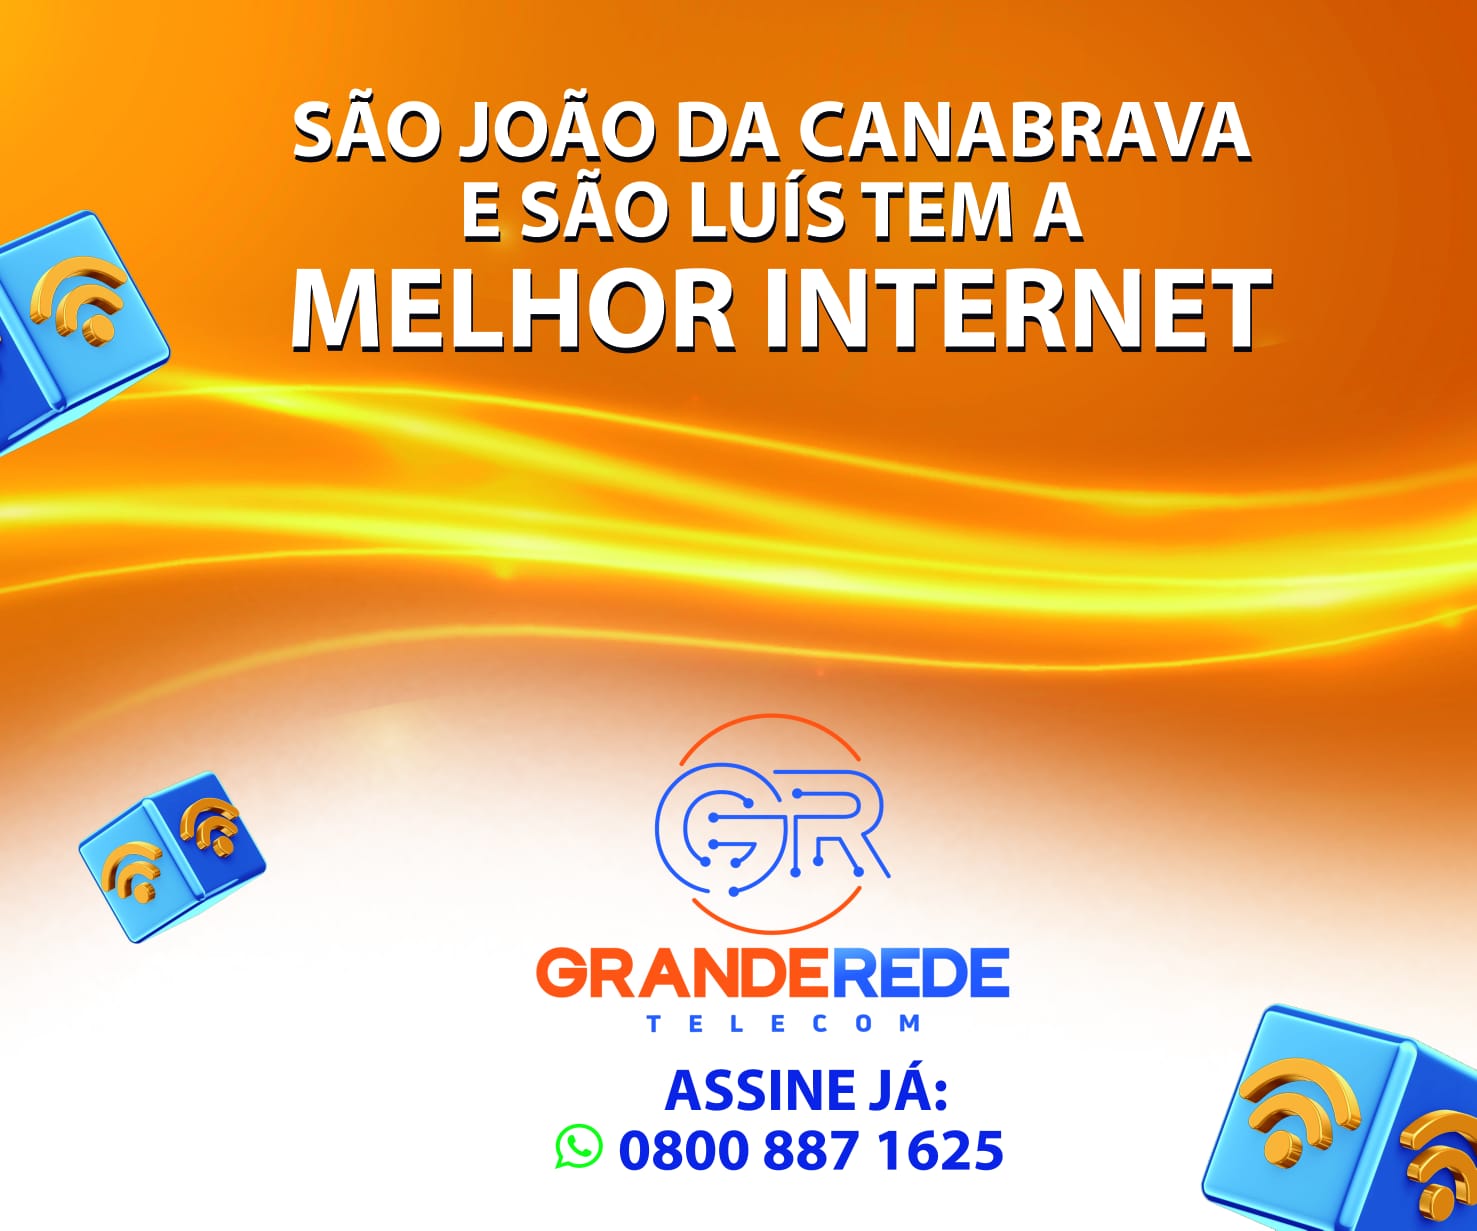 Canabrava News - noticias, fotos e vídeos de São João da Canabrava e região.